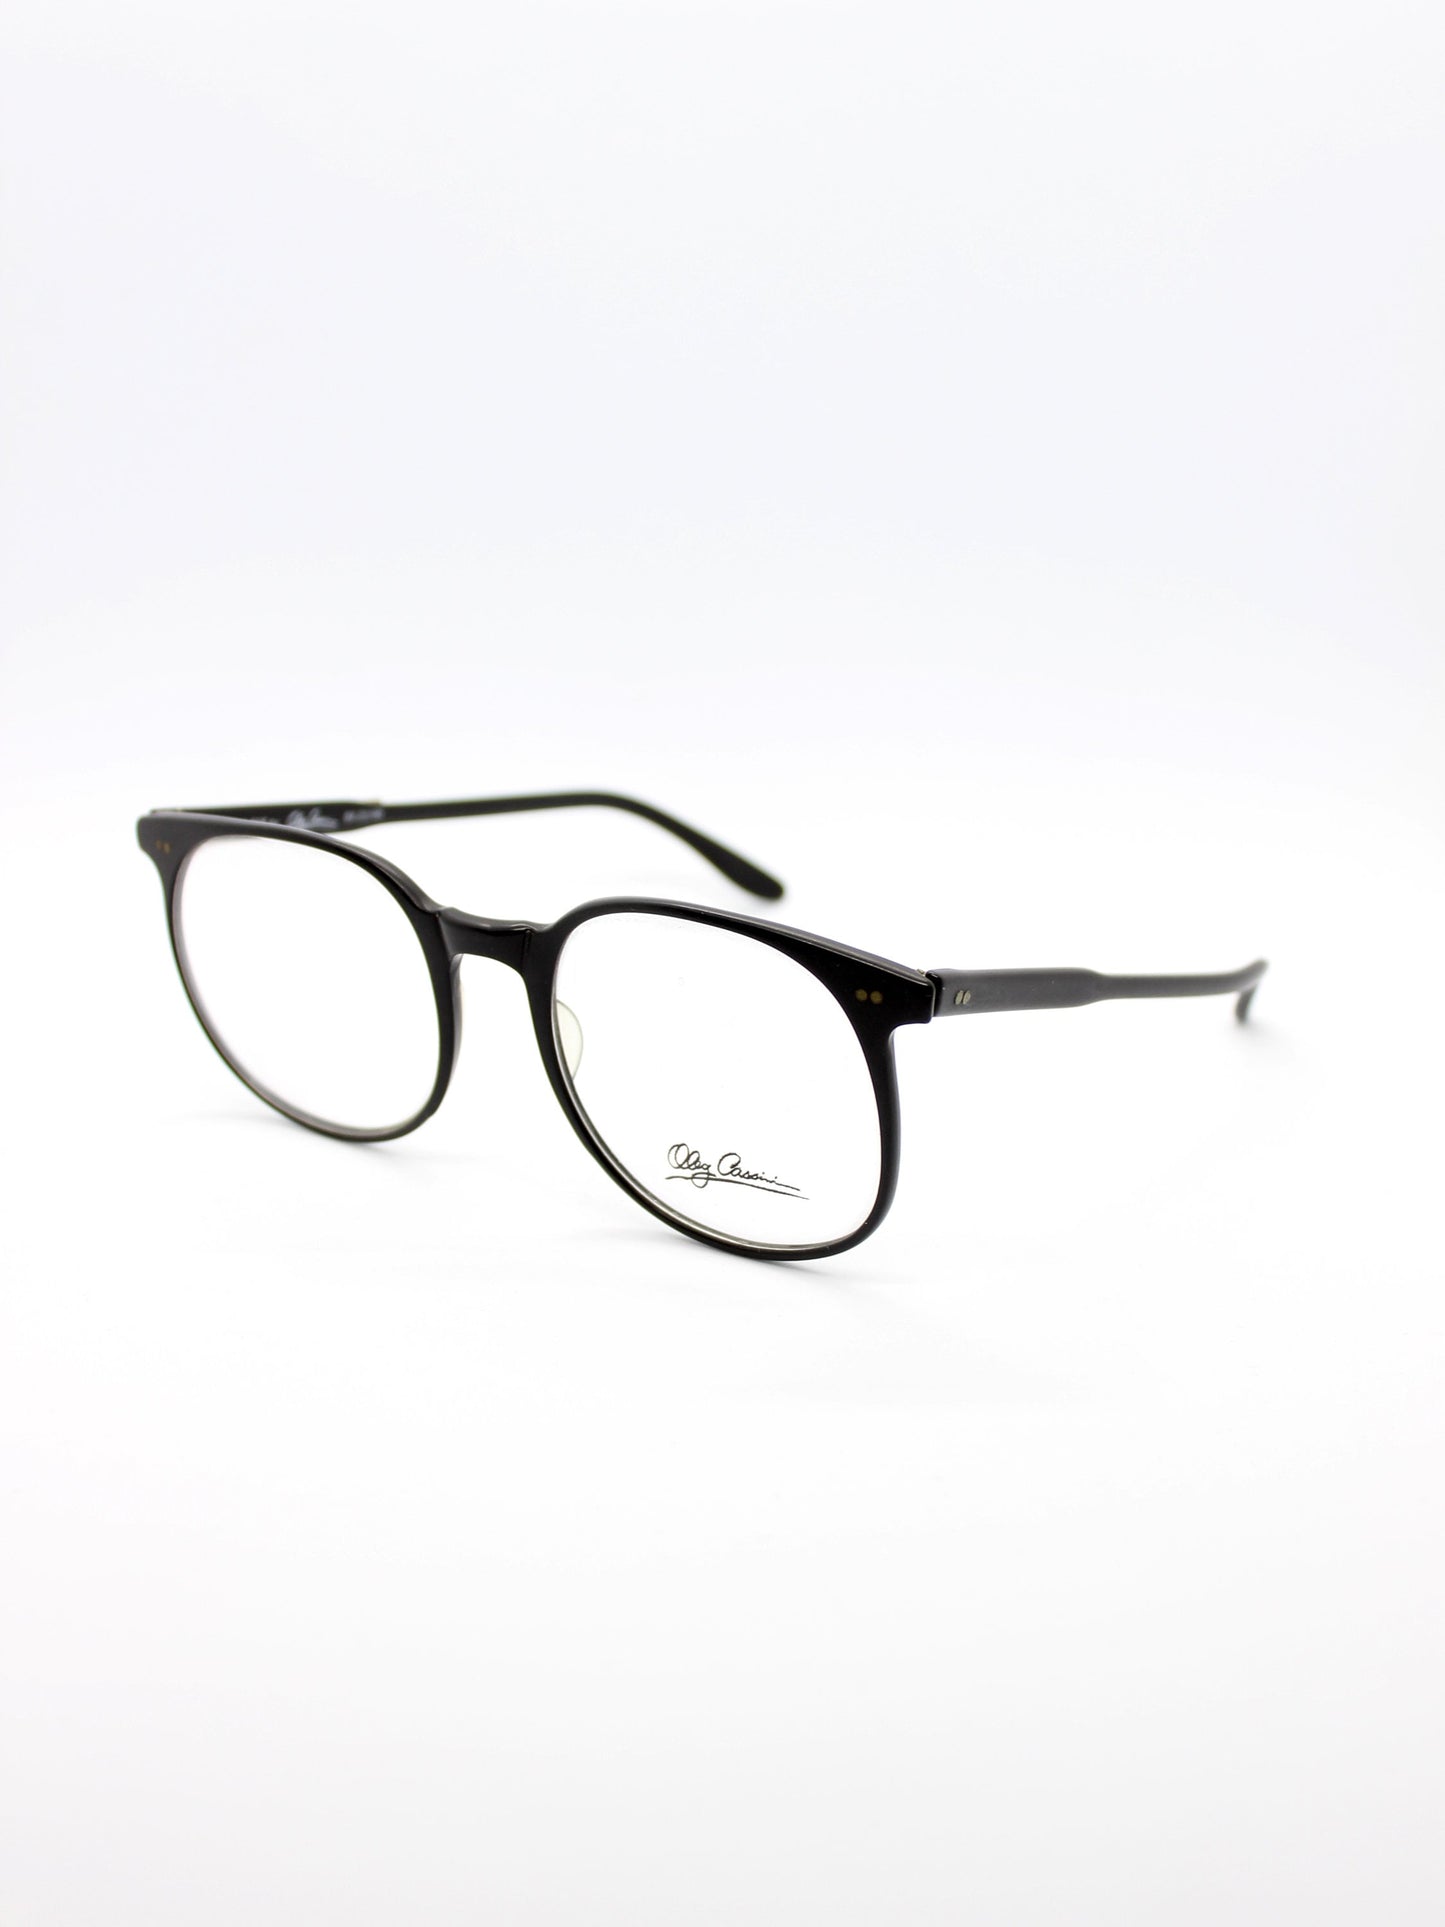 Oleg Cassini Black Matte Eyeglasses - New Old stock